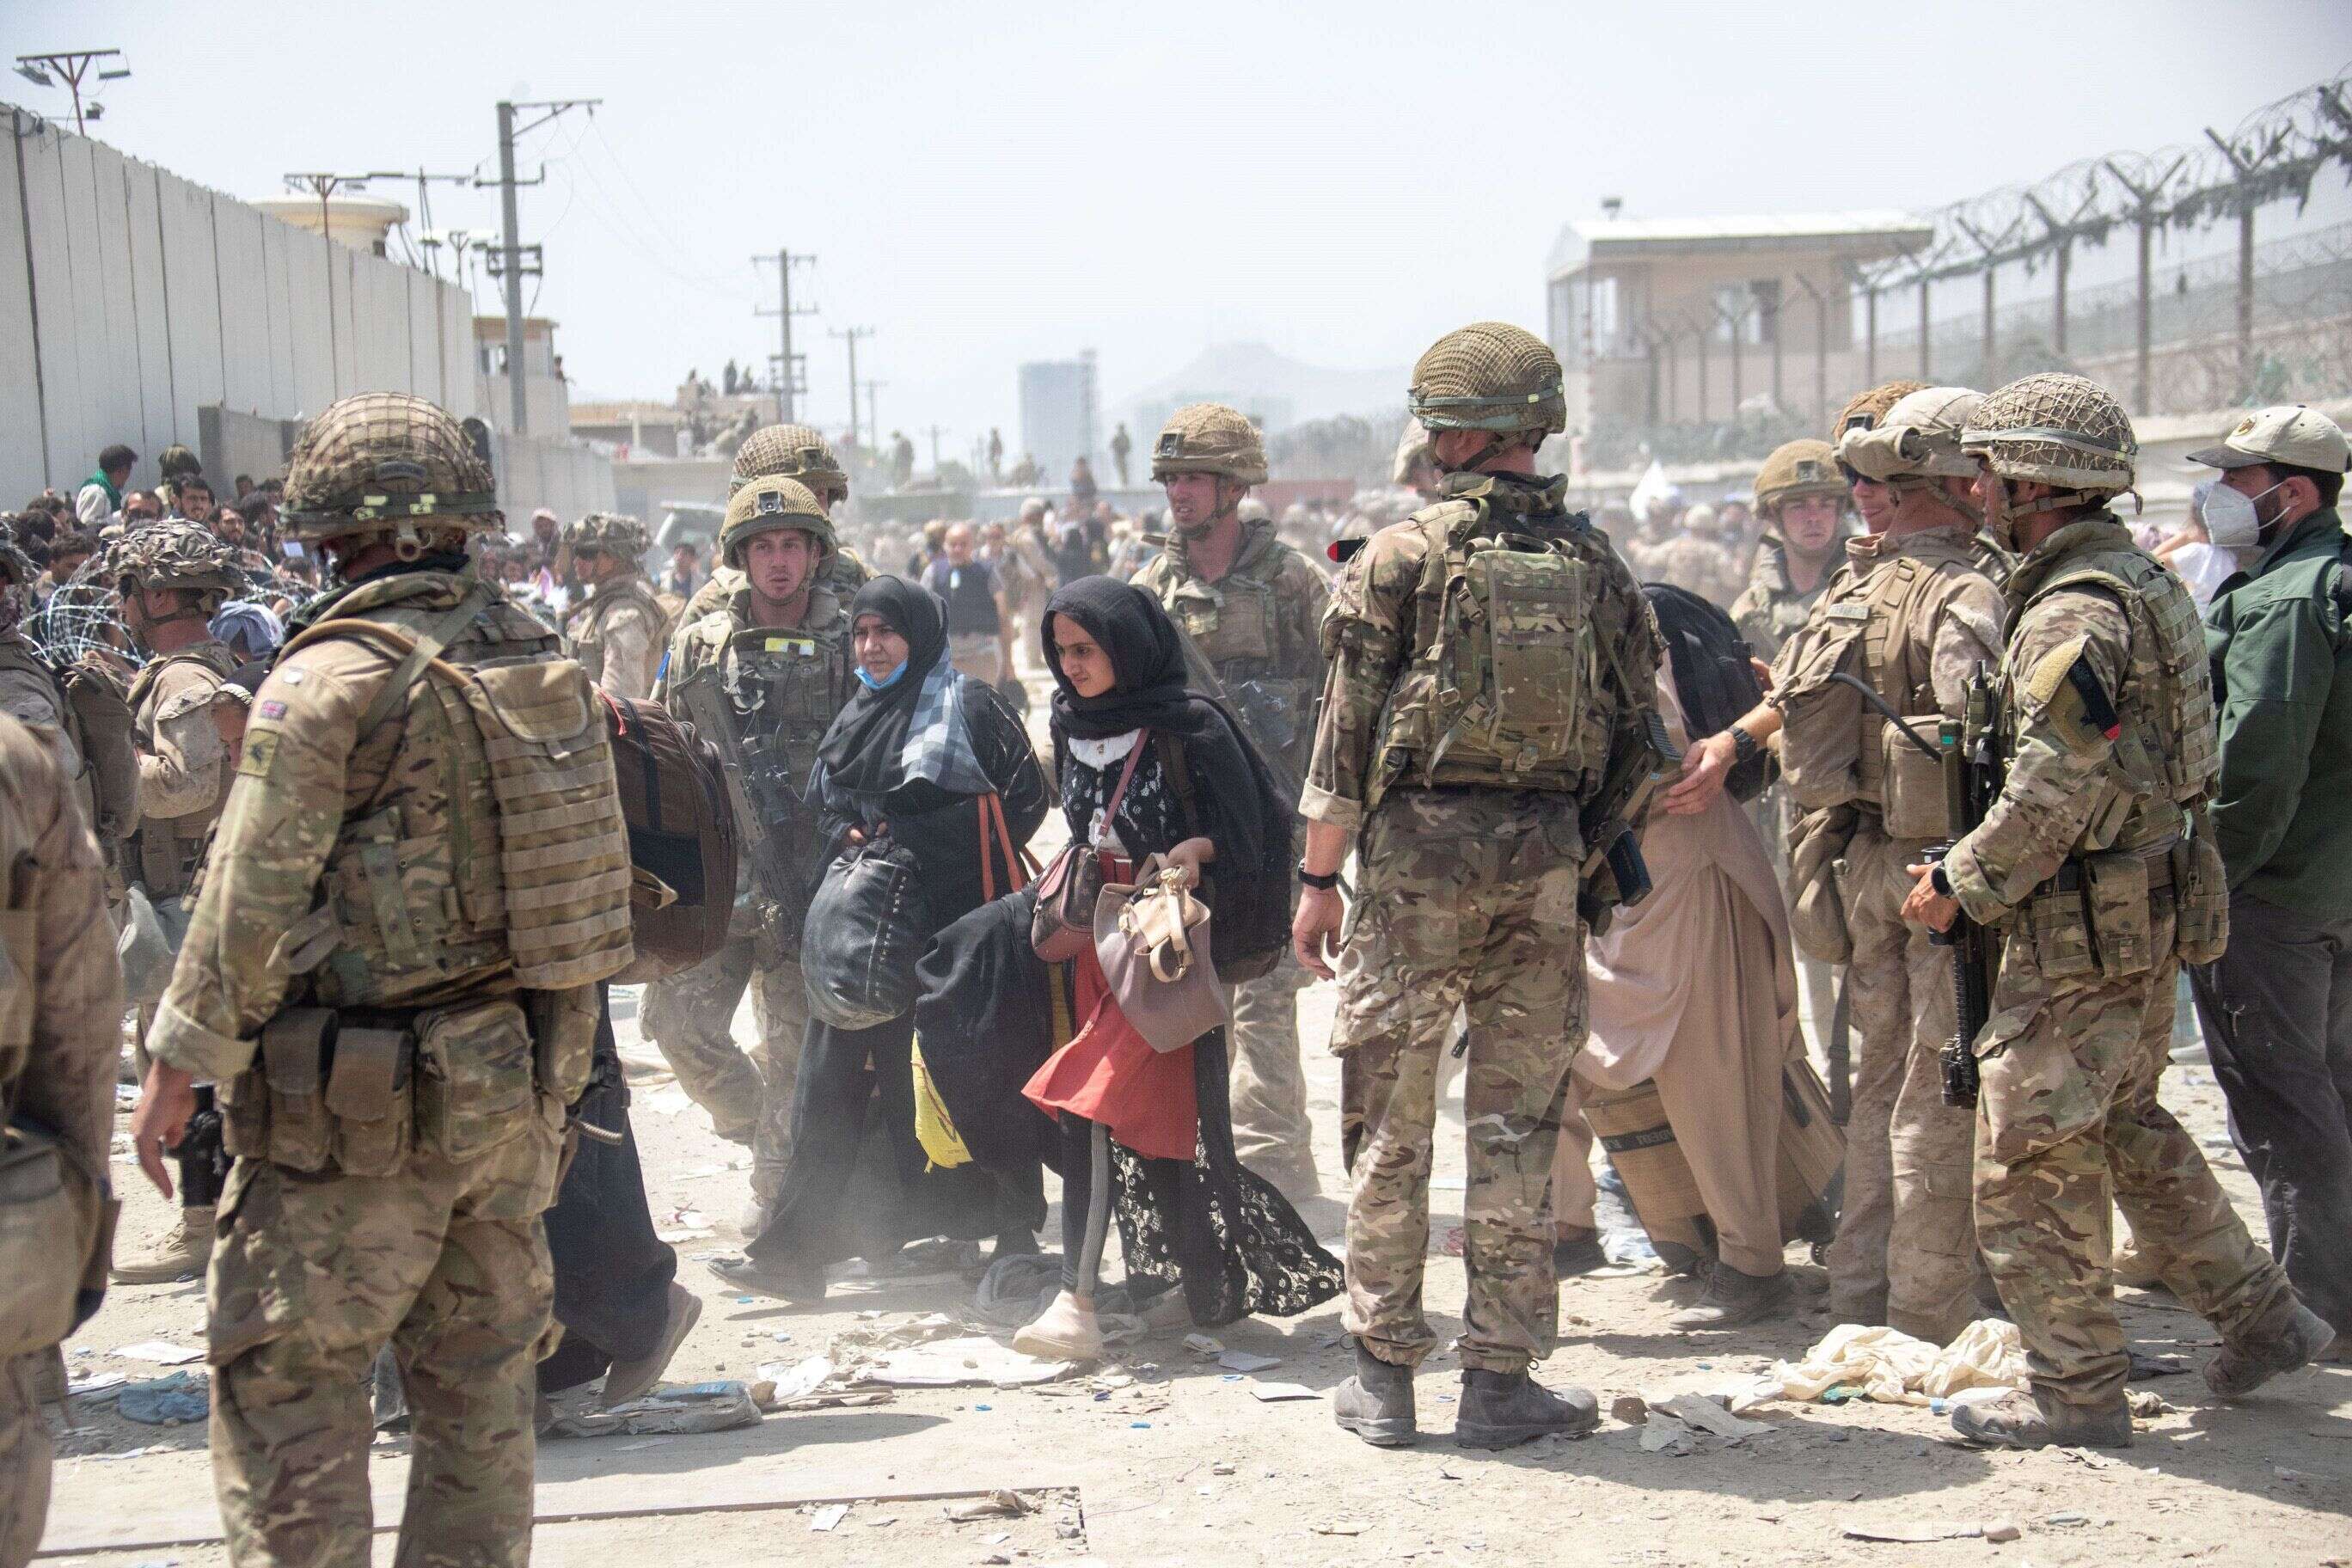 À Kaboul le 21 août, des soldats britanniques et américains évacuent des civils. (photo d'illustration par MoD Crown Copyright via Getty Images)